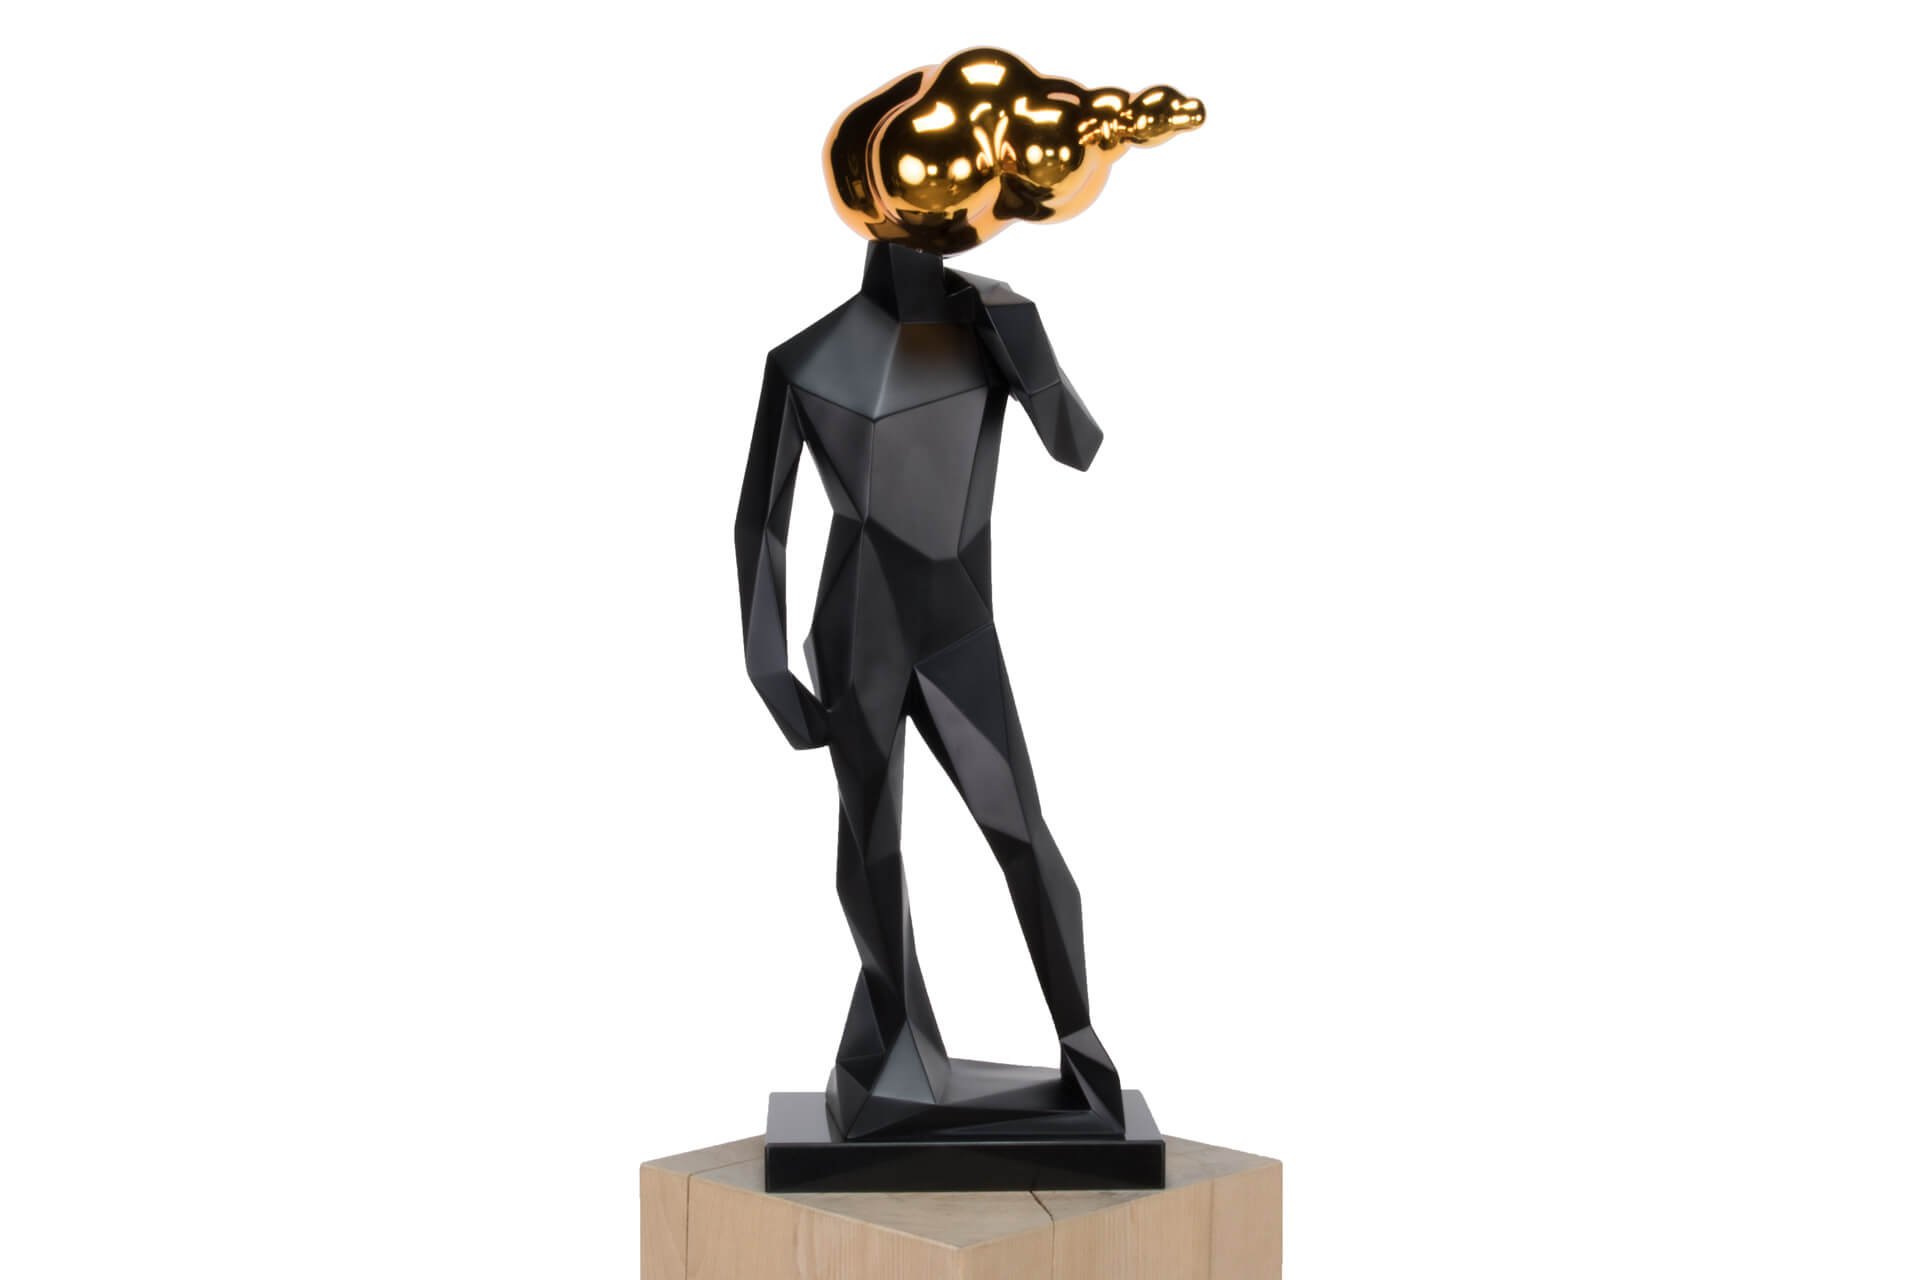 KL figur schwarz gold deko kunststein skulptur plastik figur modern 01